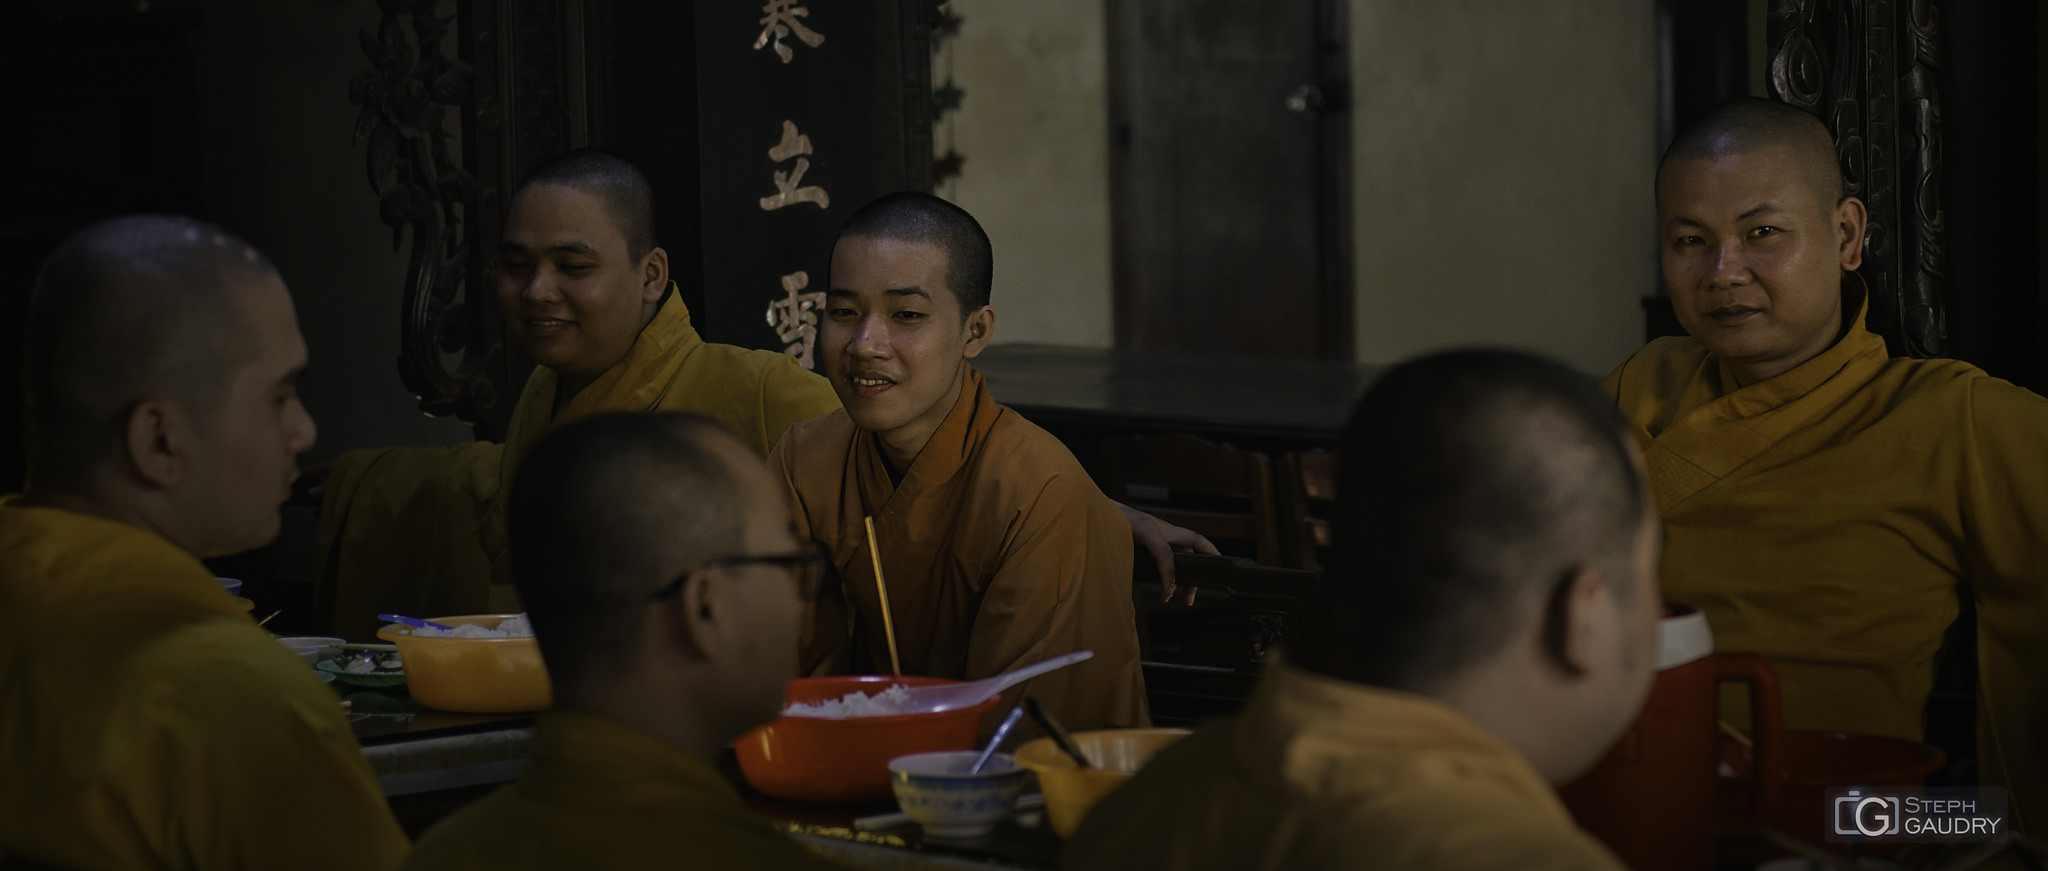 Vietnam / Le repas des moines bouddhistes